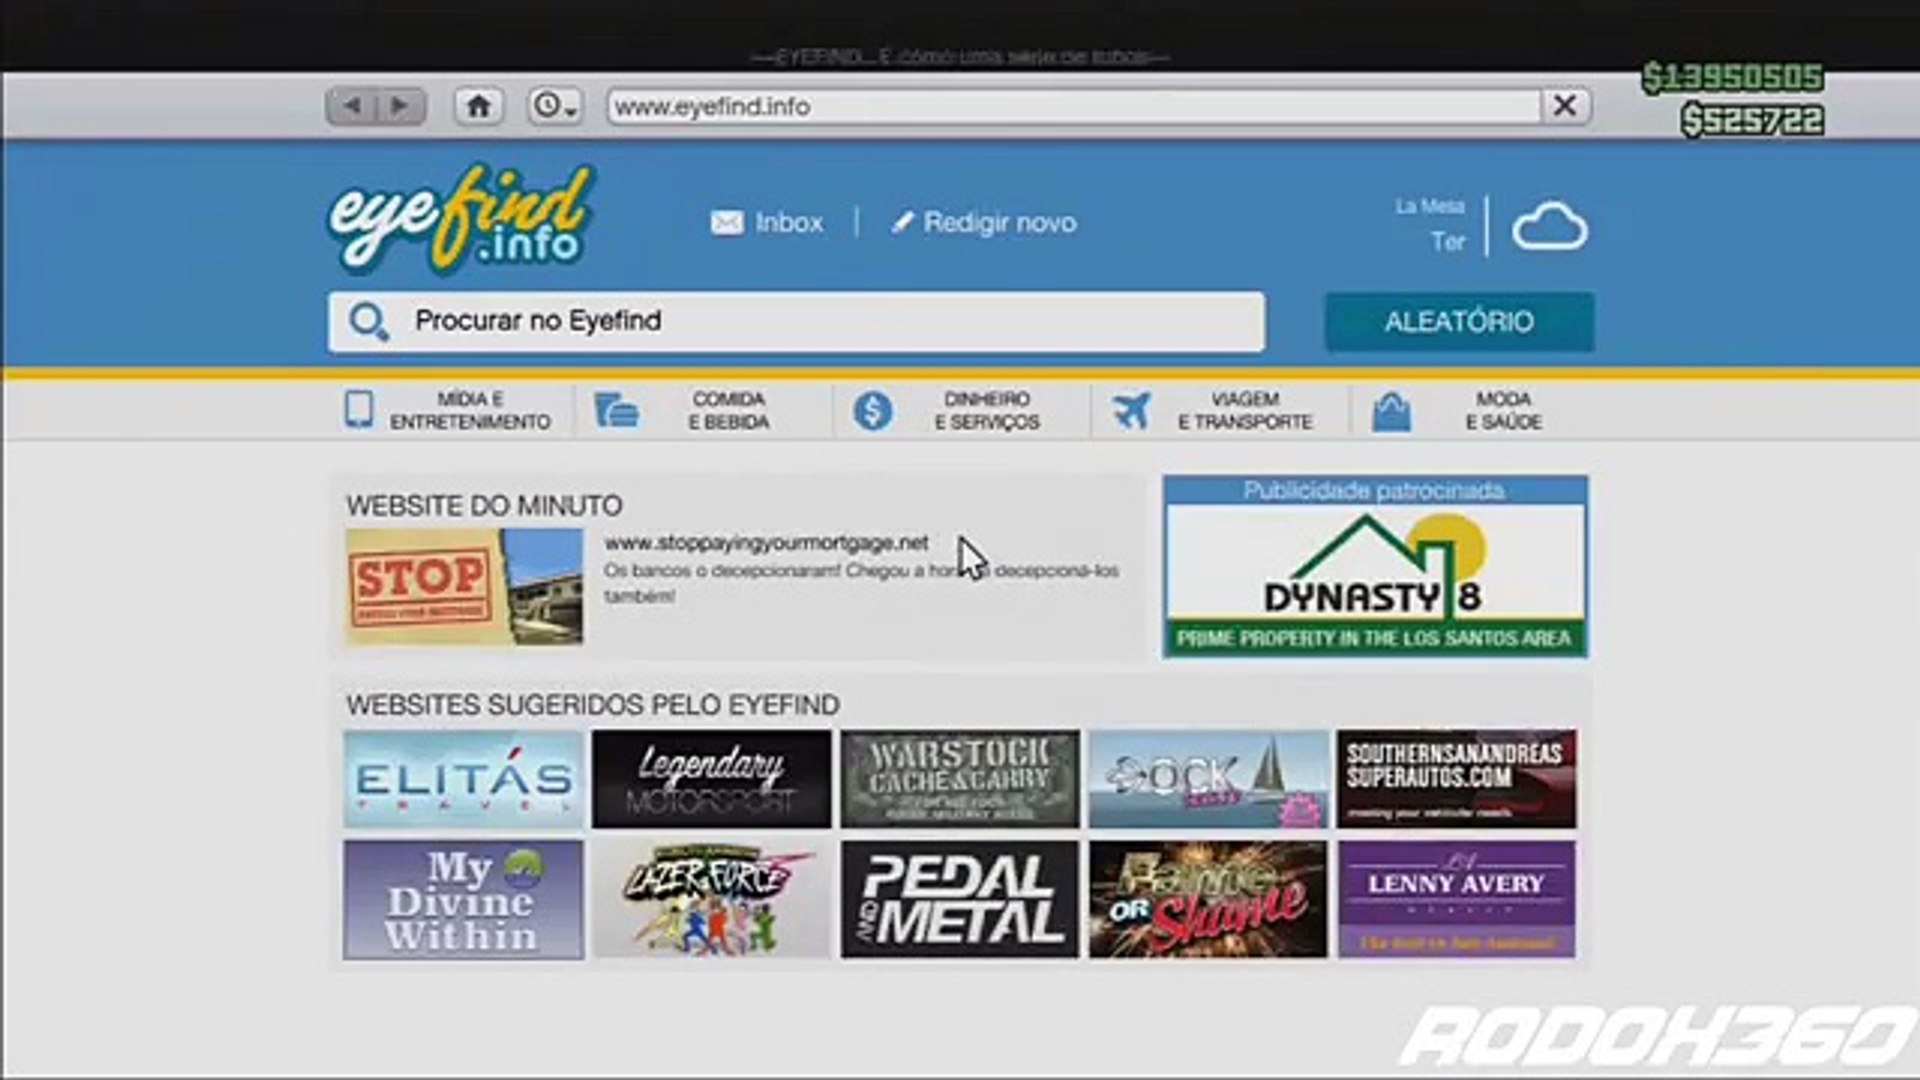 Gta V Mod Menu Oculto Do Radar + Dinheiro Infinito 1.27 Xbox 360  desbloqueado! - video Dailymotion